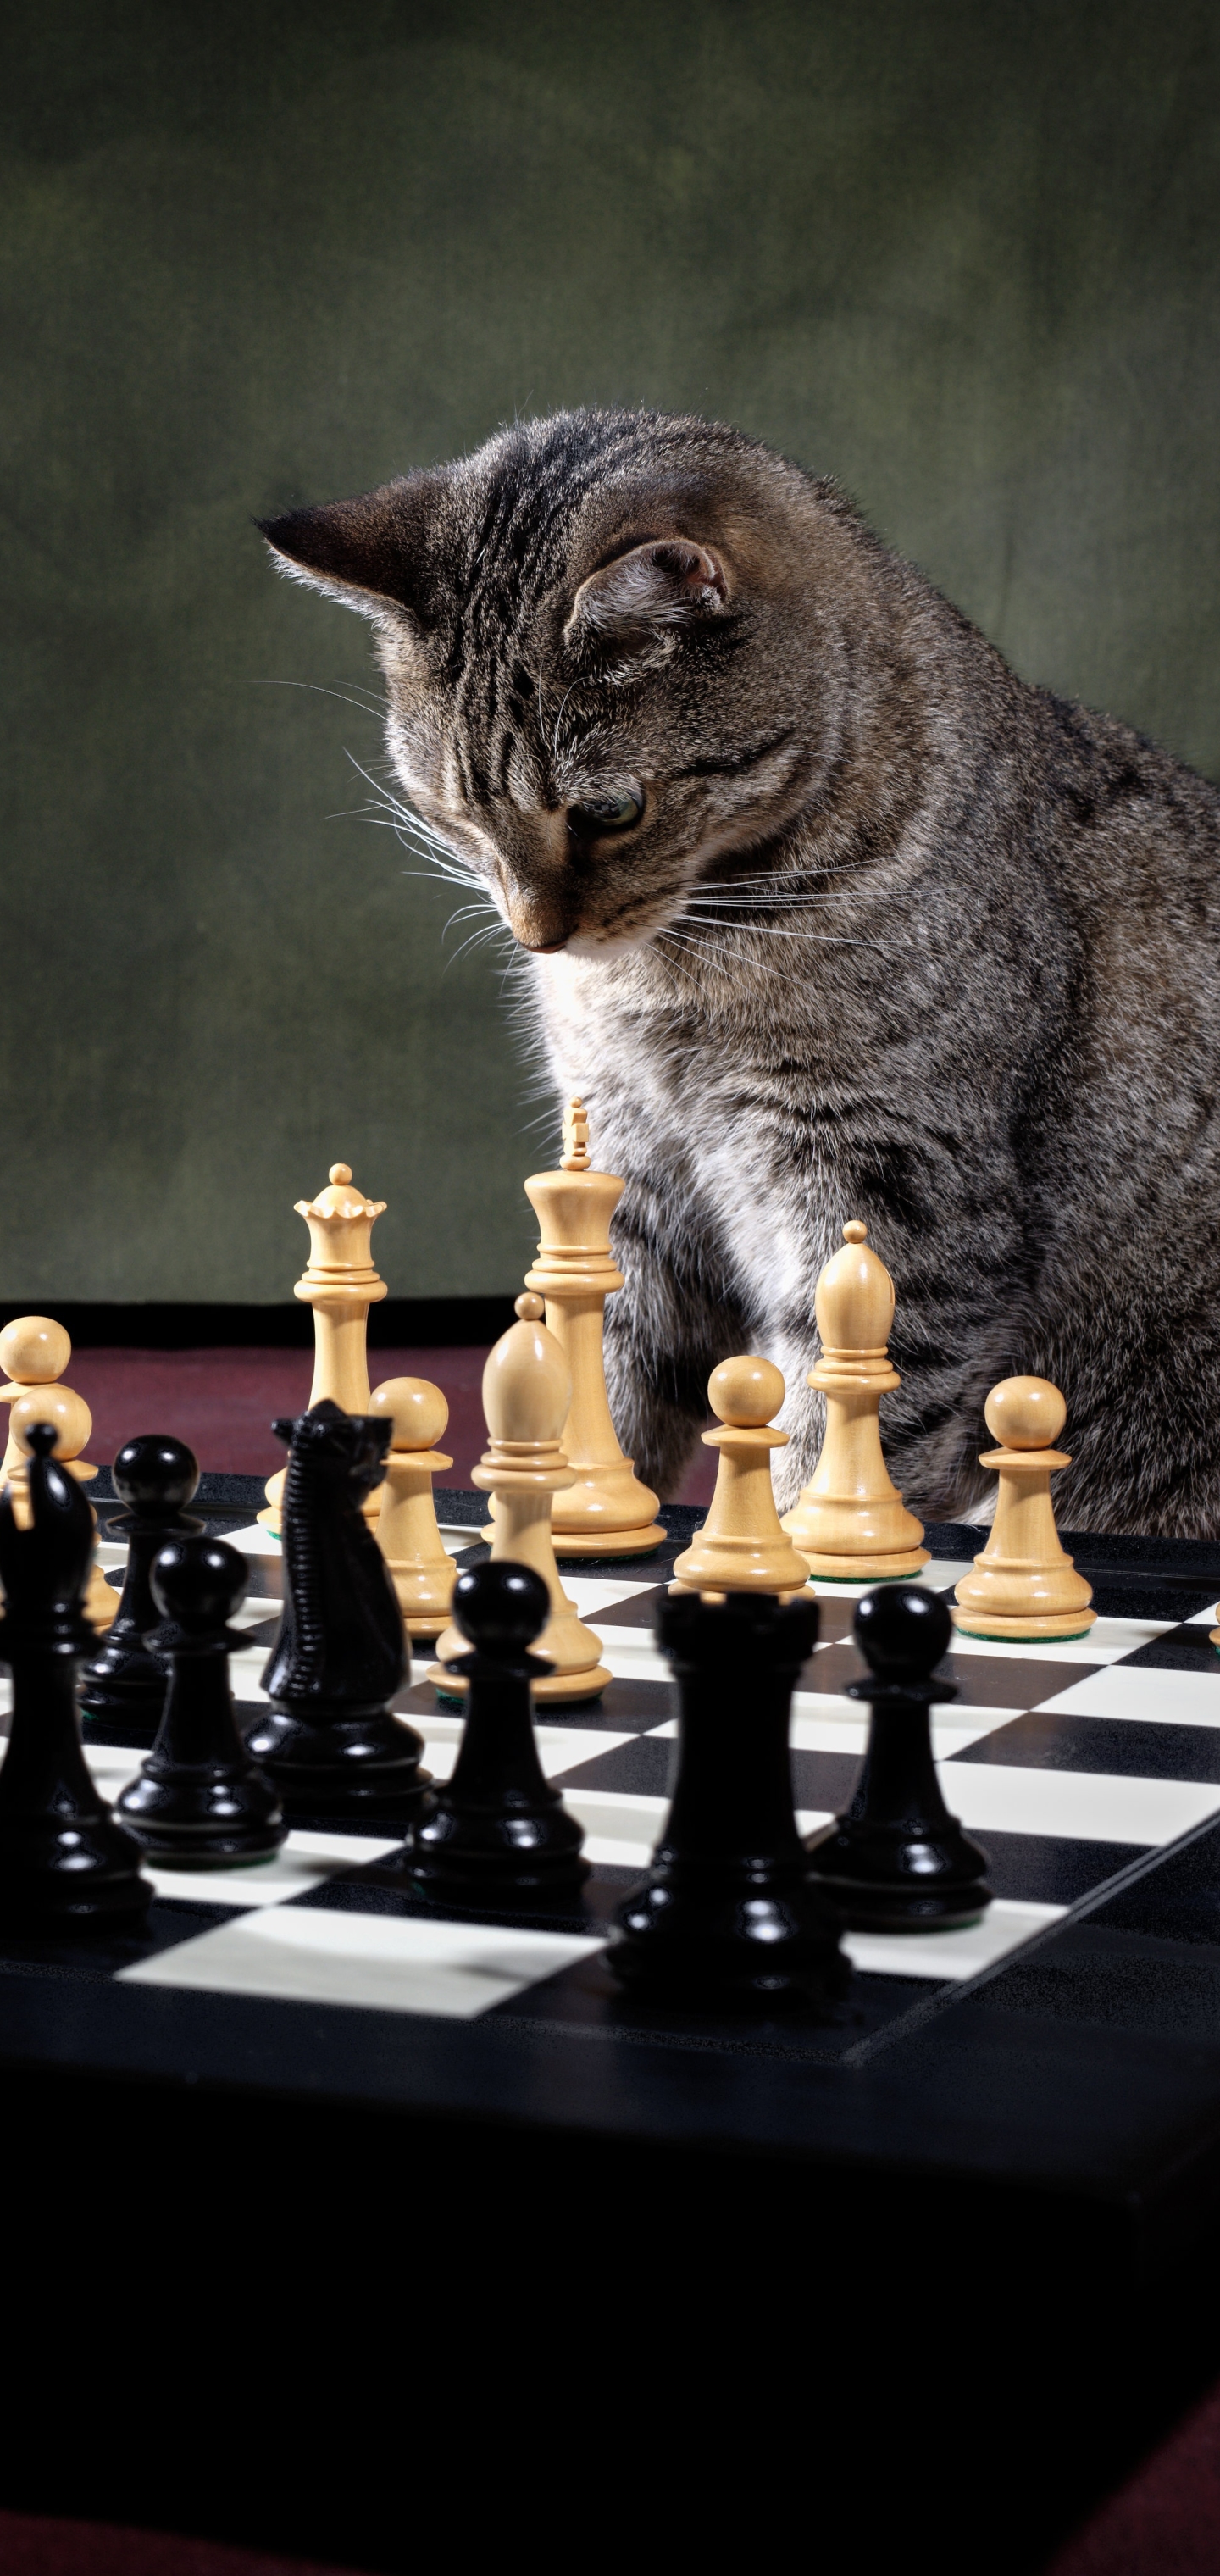 1166364 免費下載壁紙 动物, 猫, 棋, 国际象棋 屏保和圖片